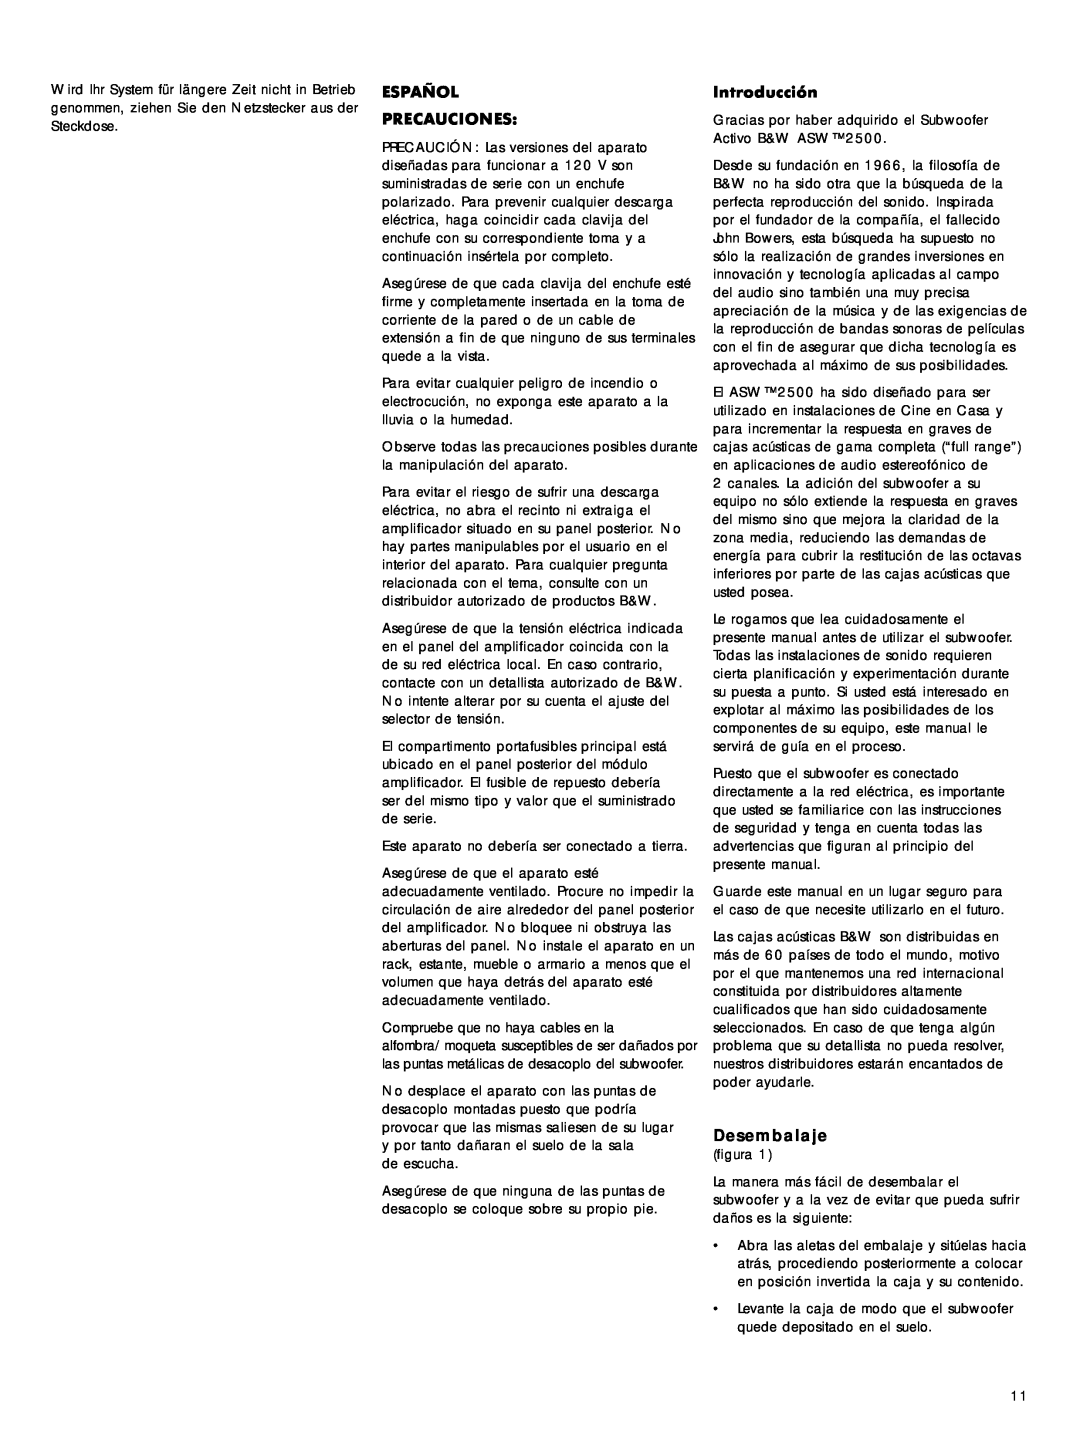 Bowers & Wilkins ASW 2500 owner manual Español Precauciones, Introducción, Desembalaje 